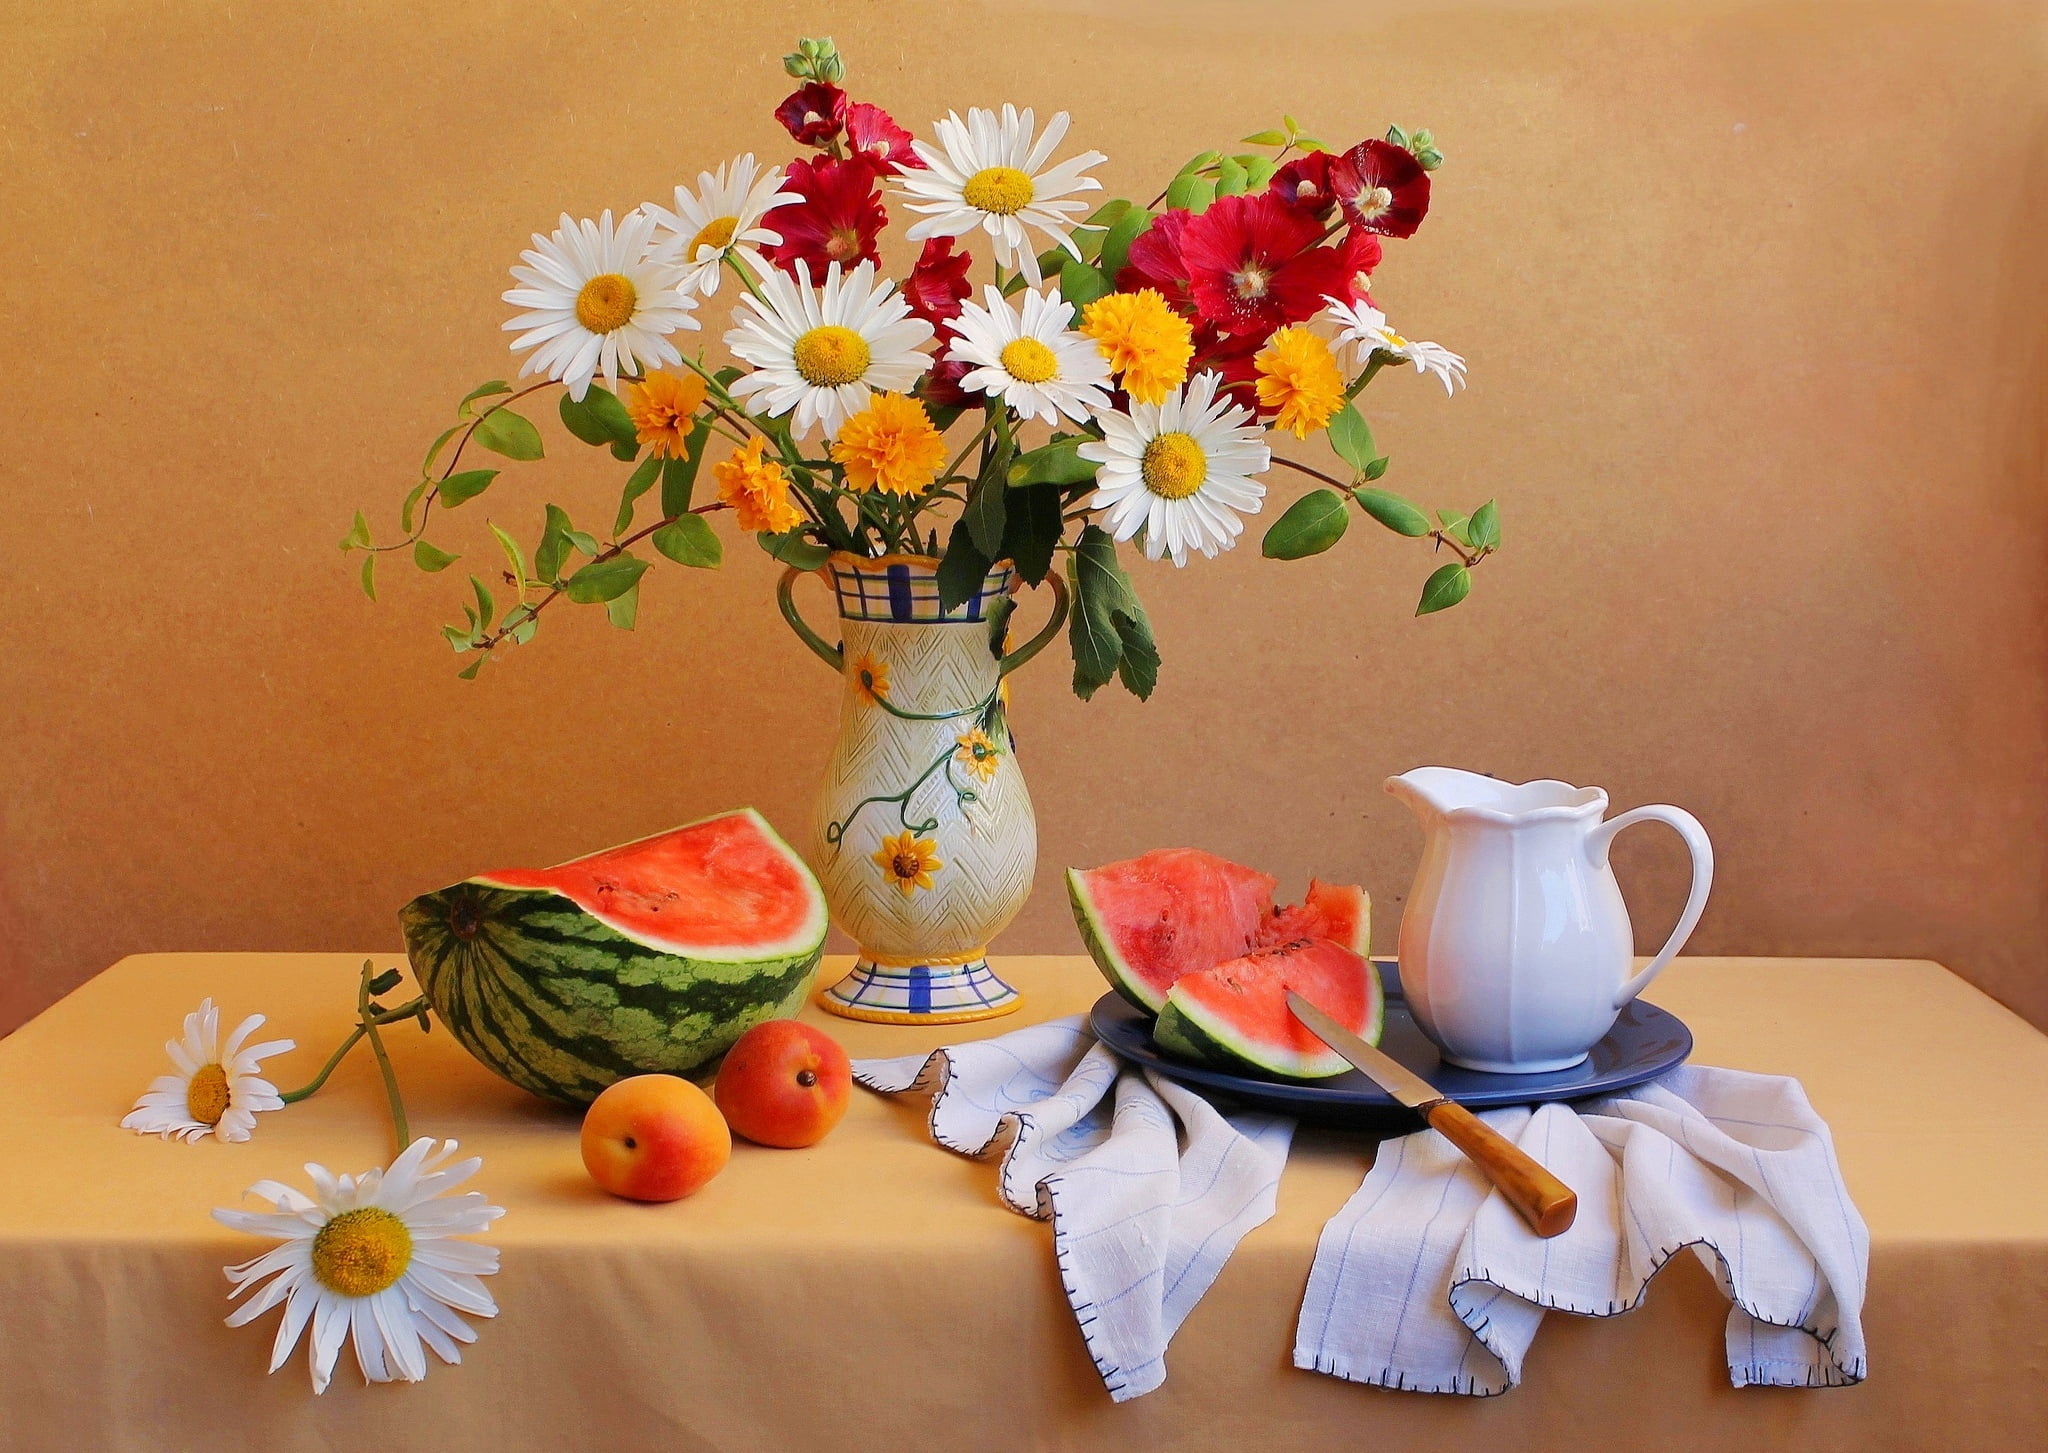 watermelon fruit, flowers, table, bouquet, knife, vase, pitcher